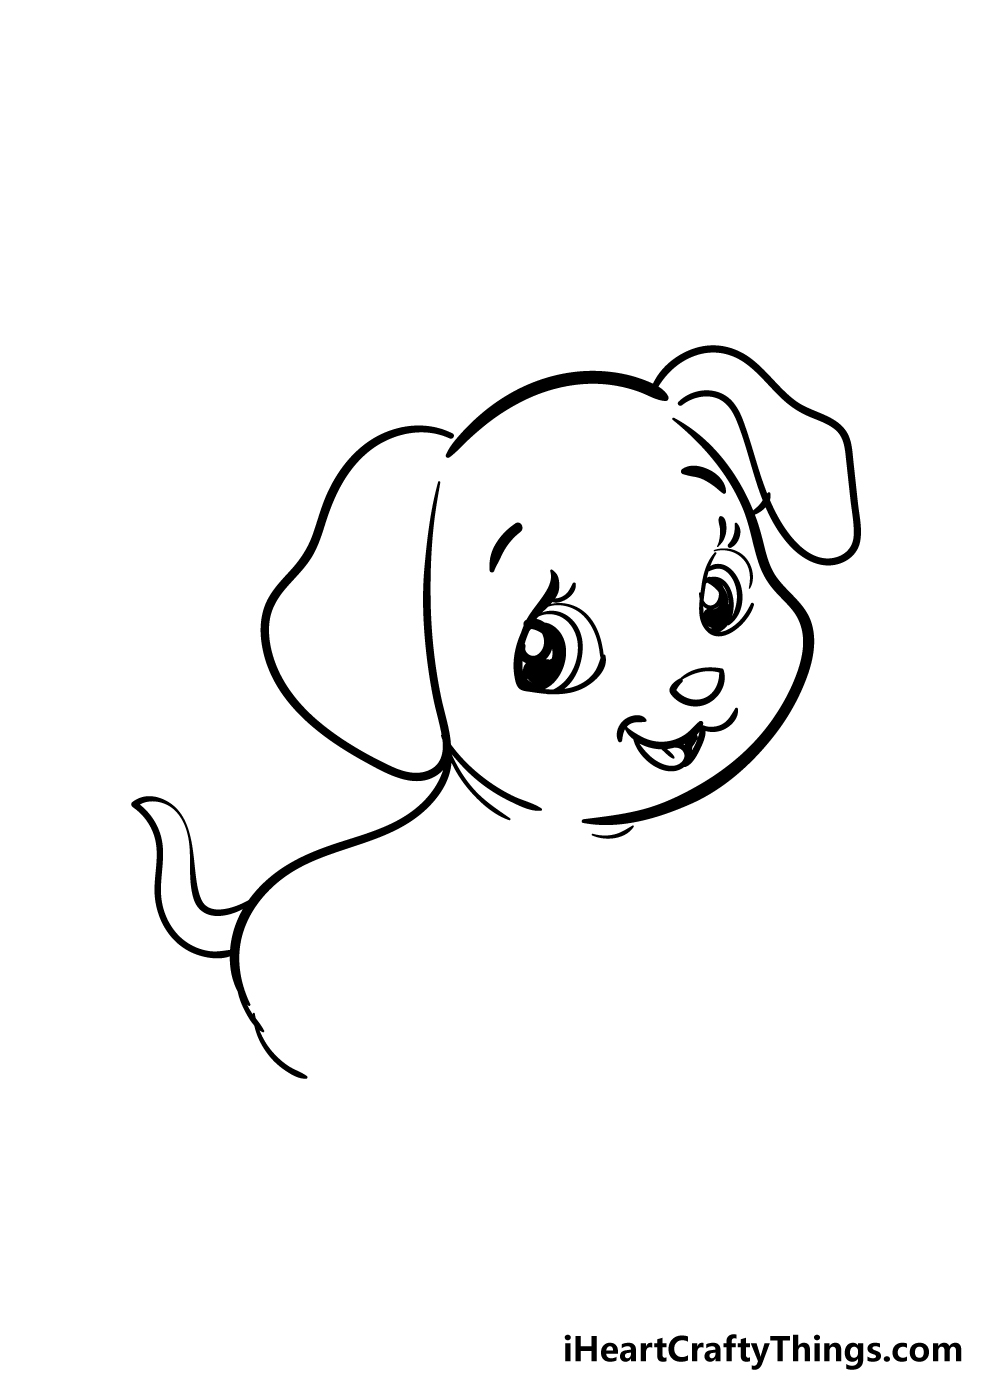 Puppy5 - Cách vẽ con chó đơn giản với 8 bước cơ bản có hướng dẫn chi tiết